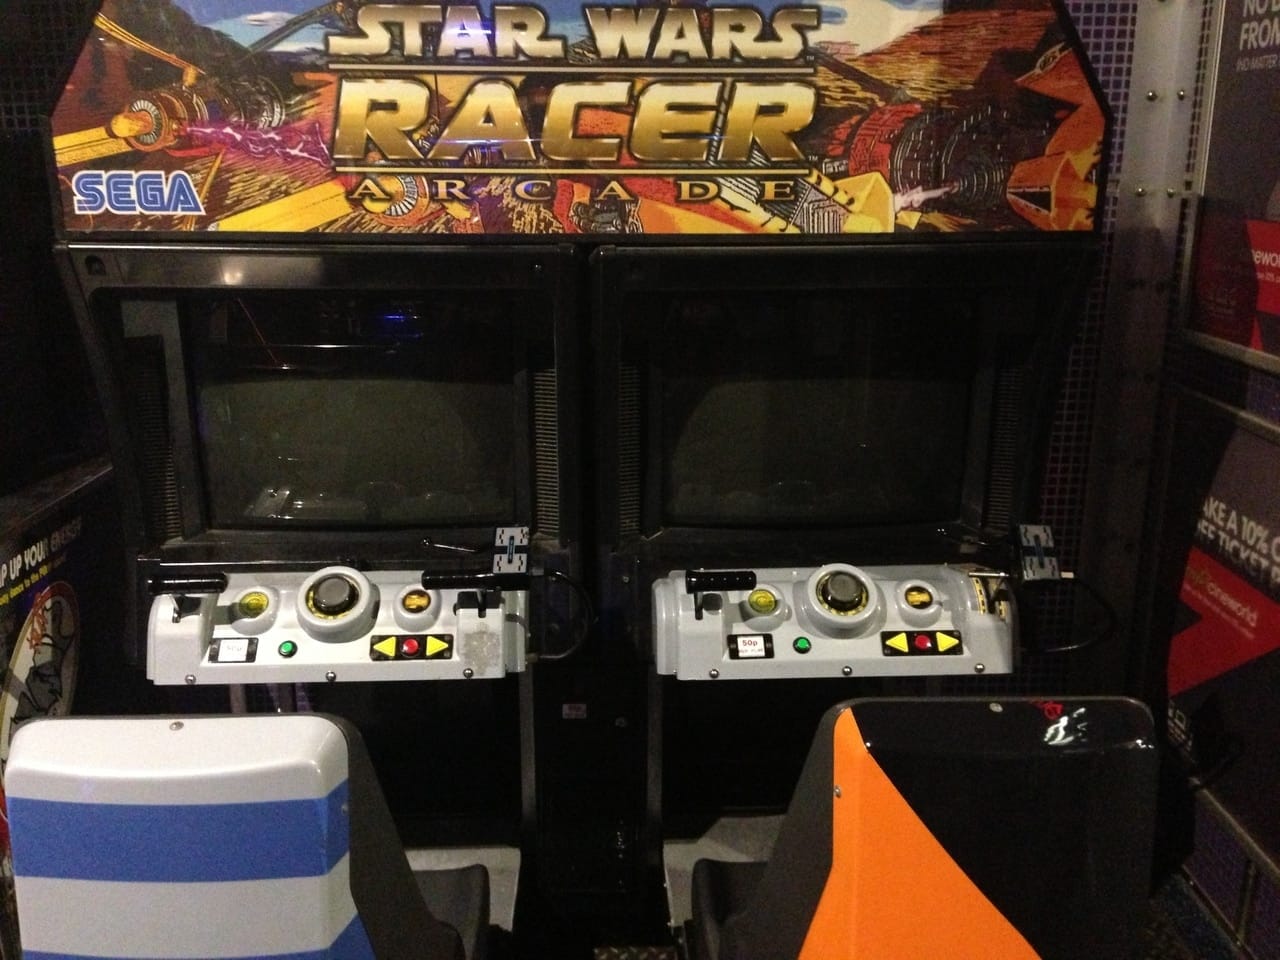 Star Wars Racer Arcade Machine